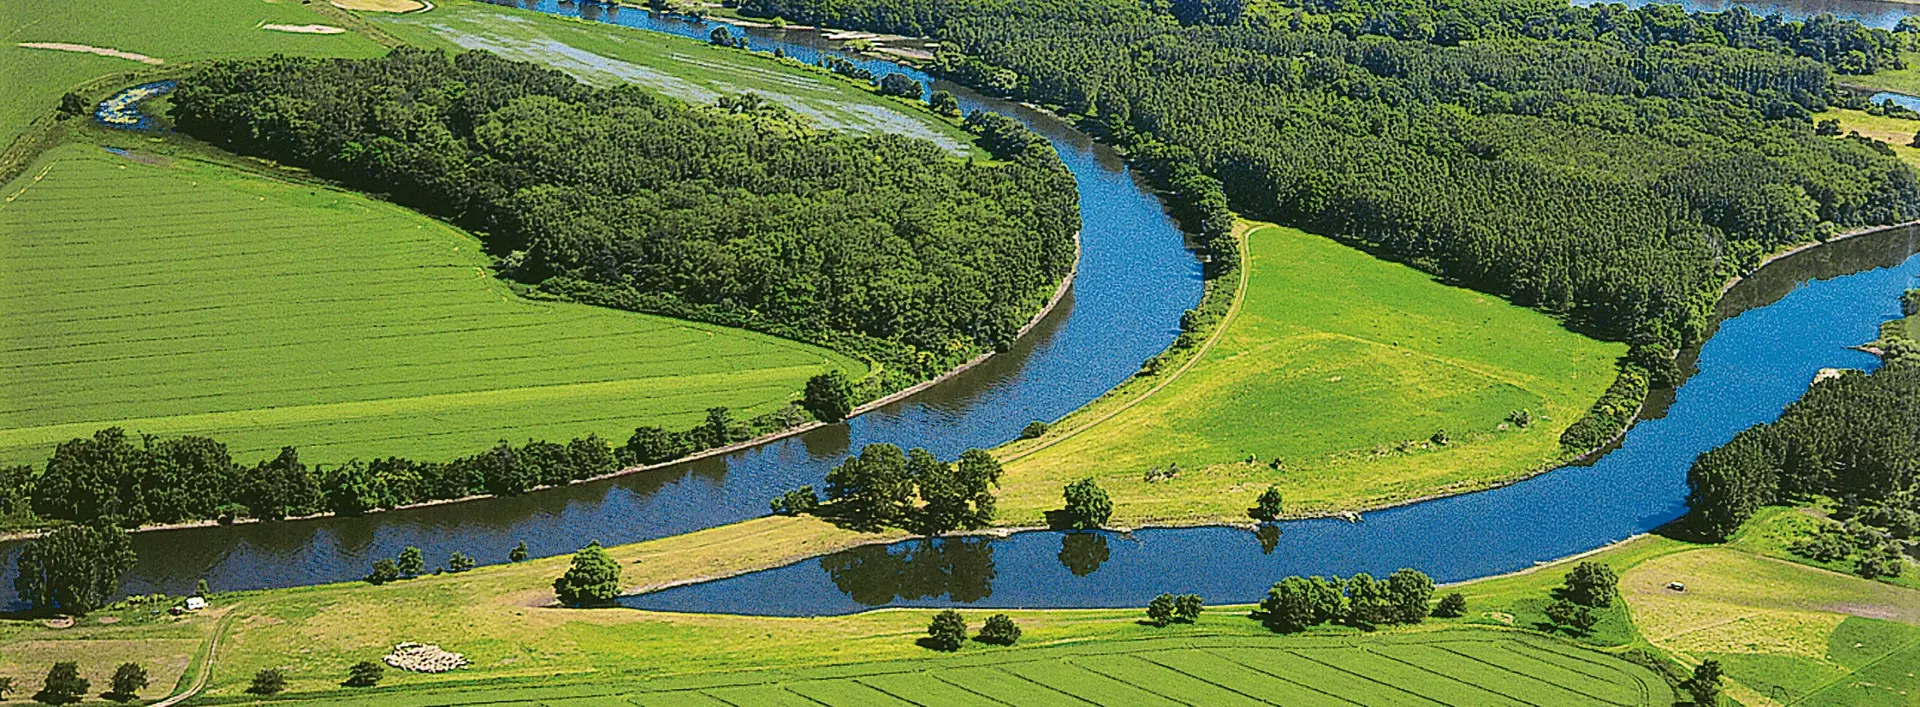 Das Biosphärenreservat Mittelelbe ist ein Teil des UNESCO Biosphärenreservats Flusslandschaft Elbe.